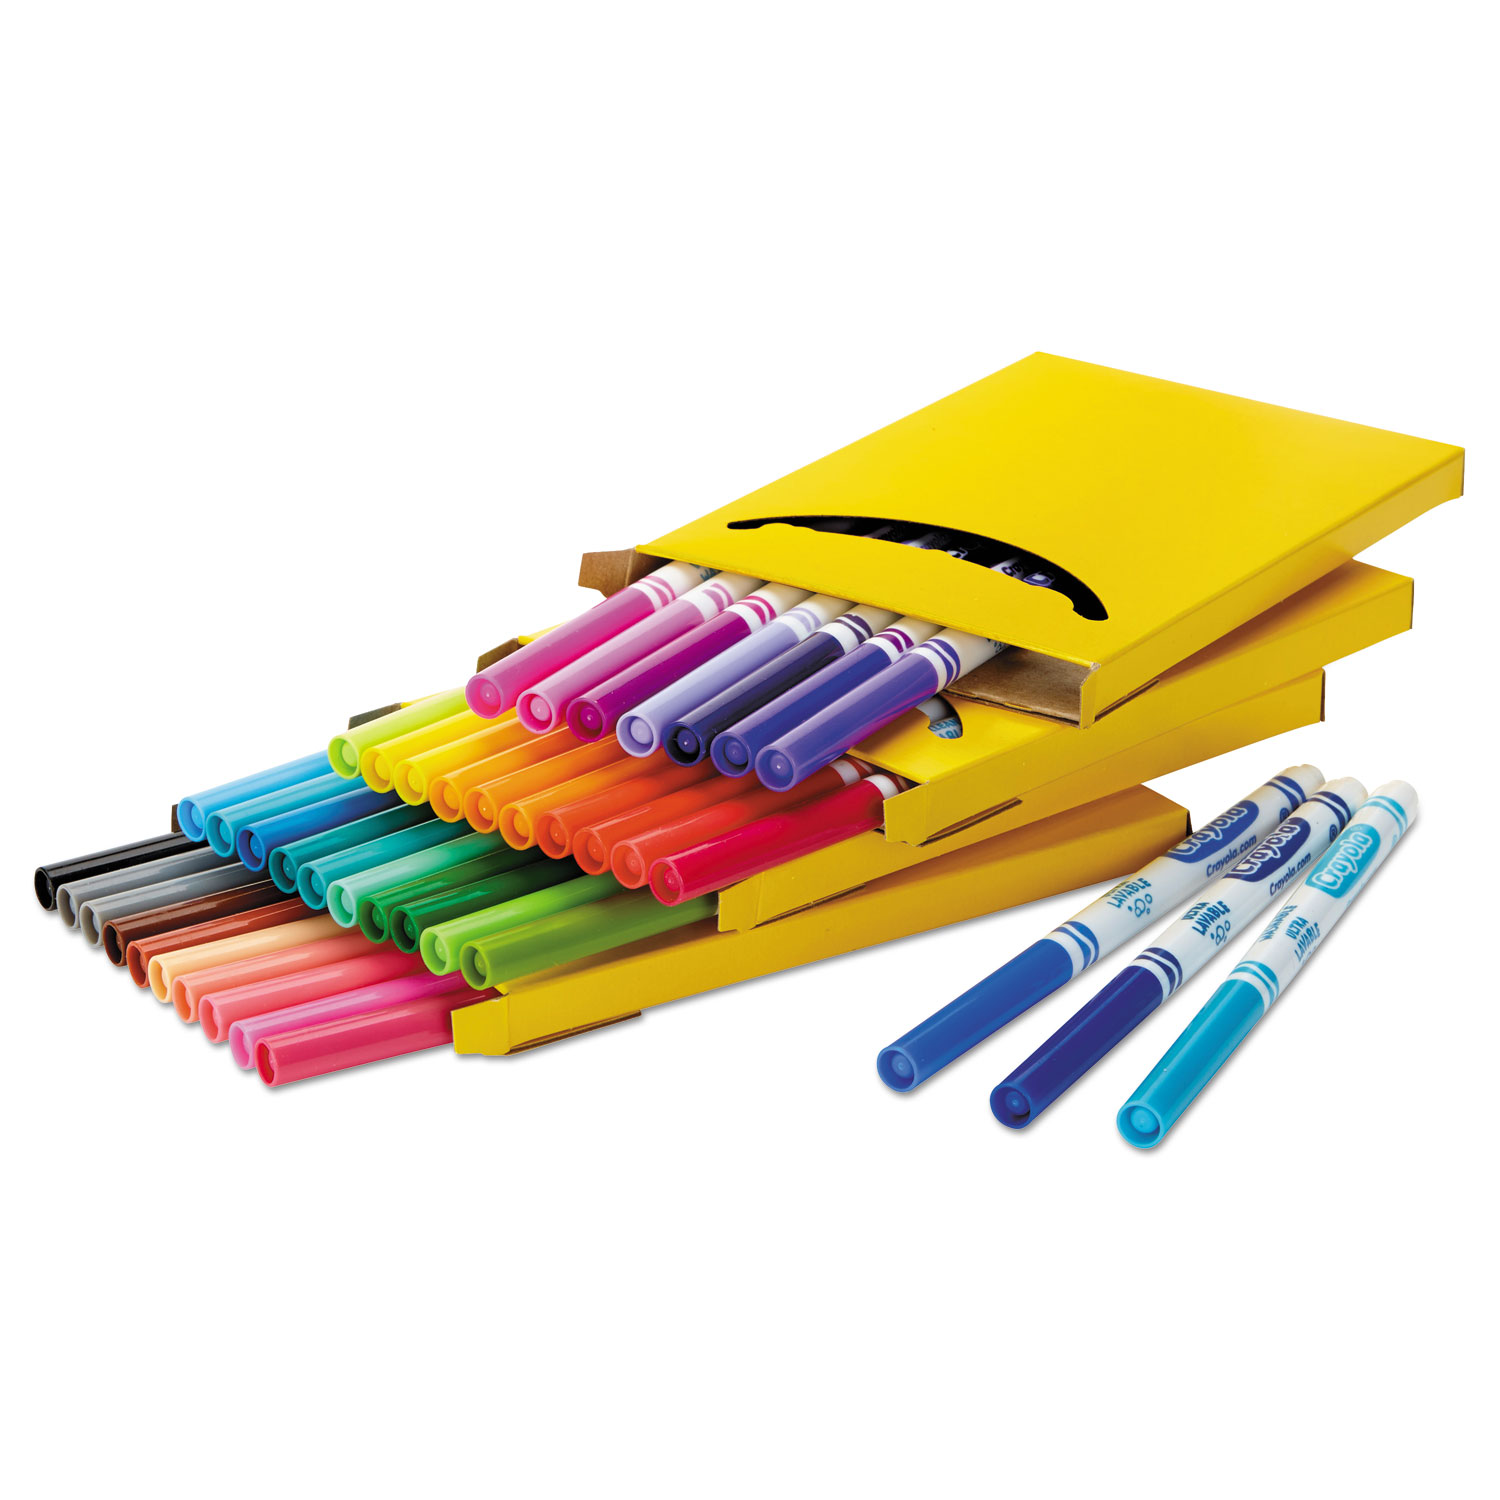 Crayola SuperTips Washable Markers - 20 / Pack - Zuma